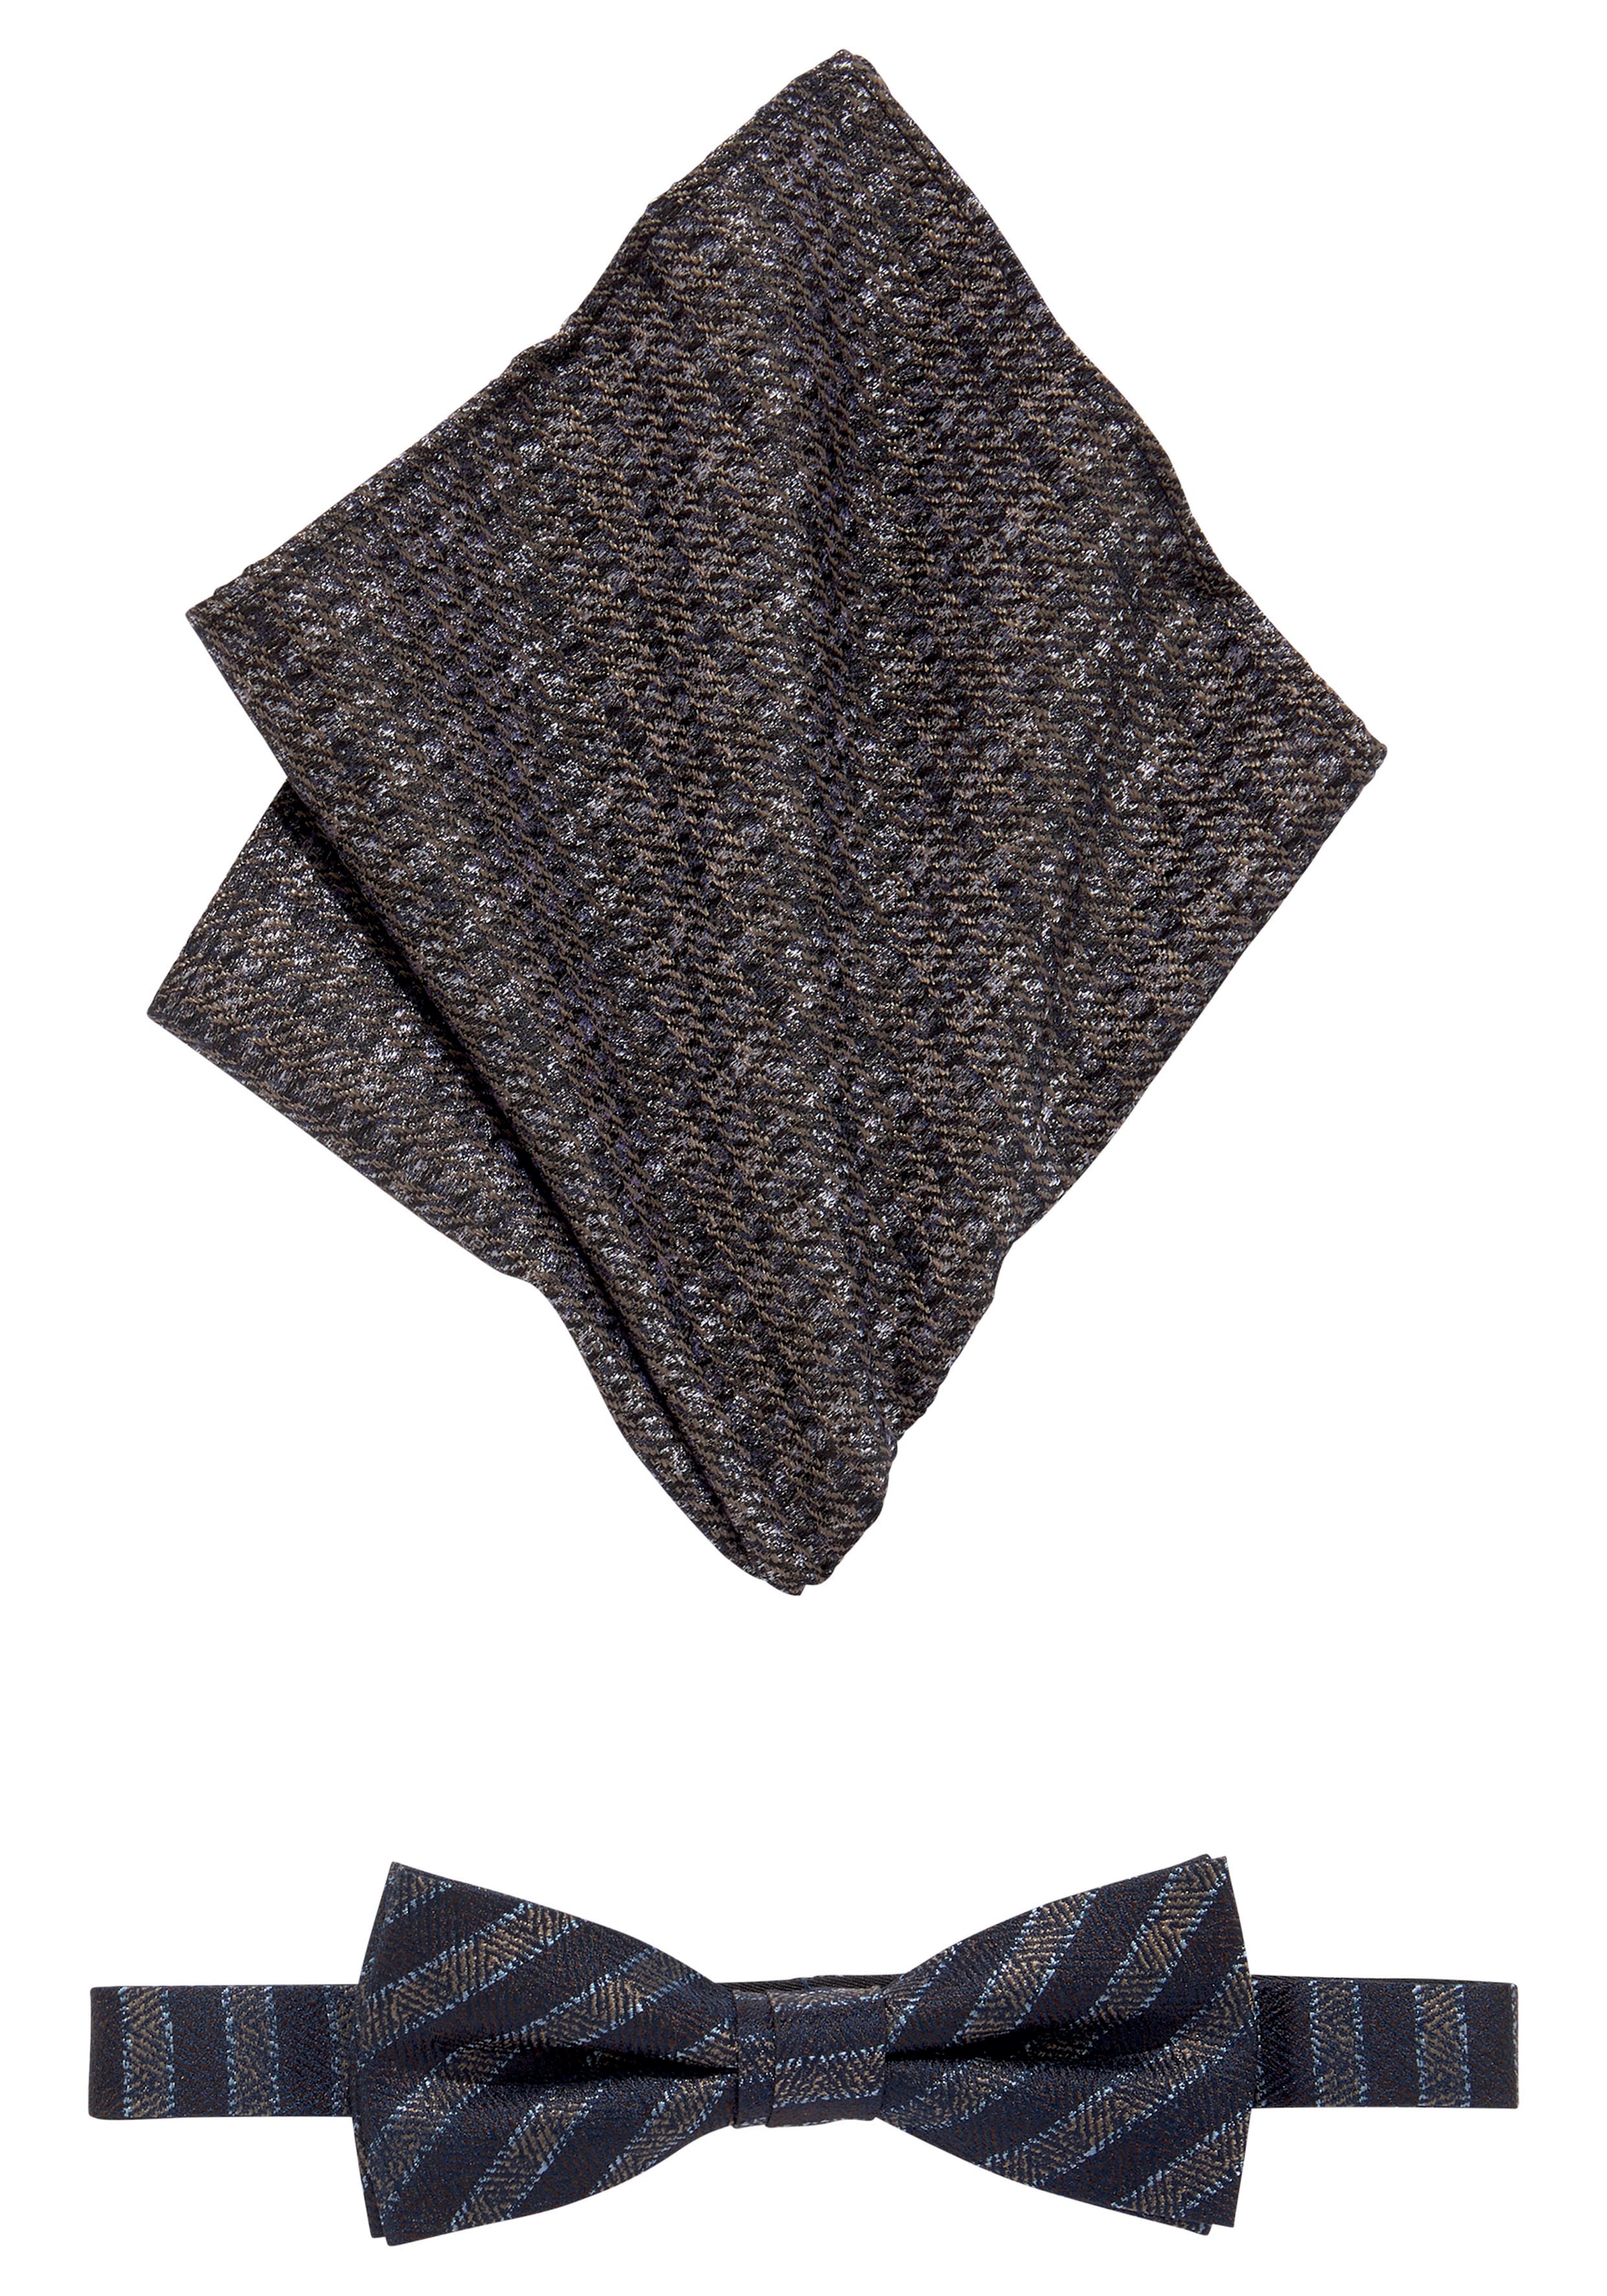 mehr Ackermann jetzt bei kaufen Krawatten Krawatte | online und